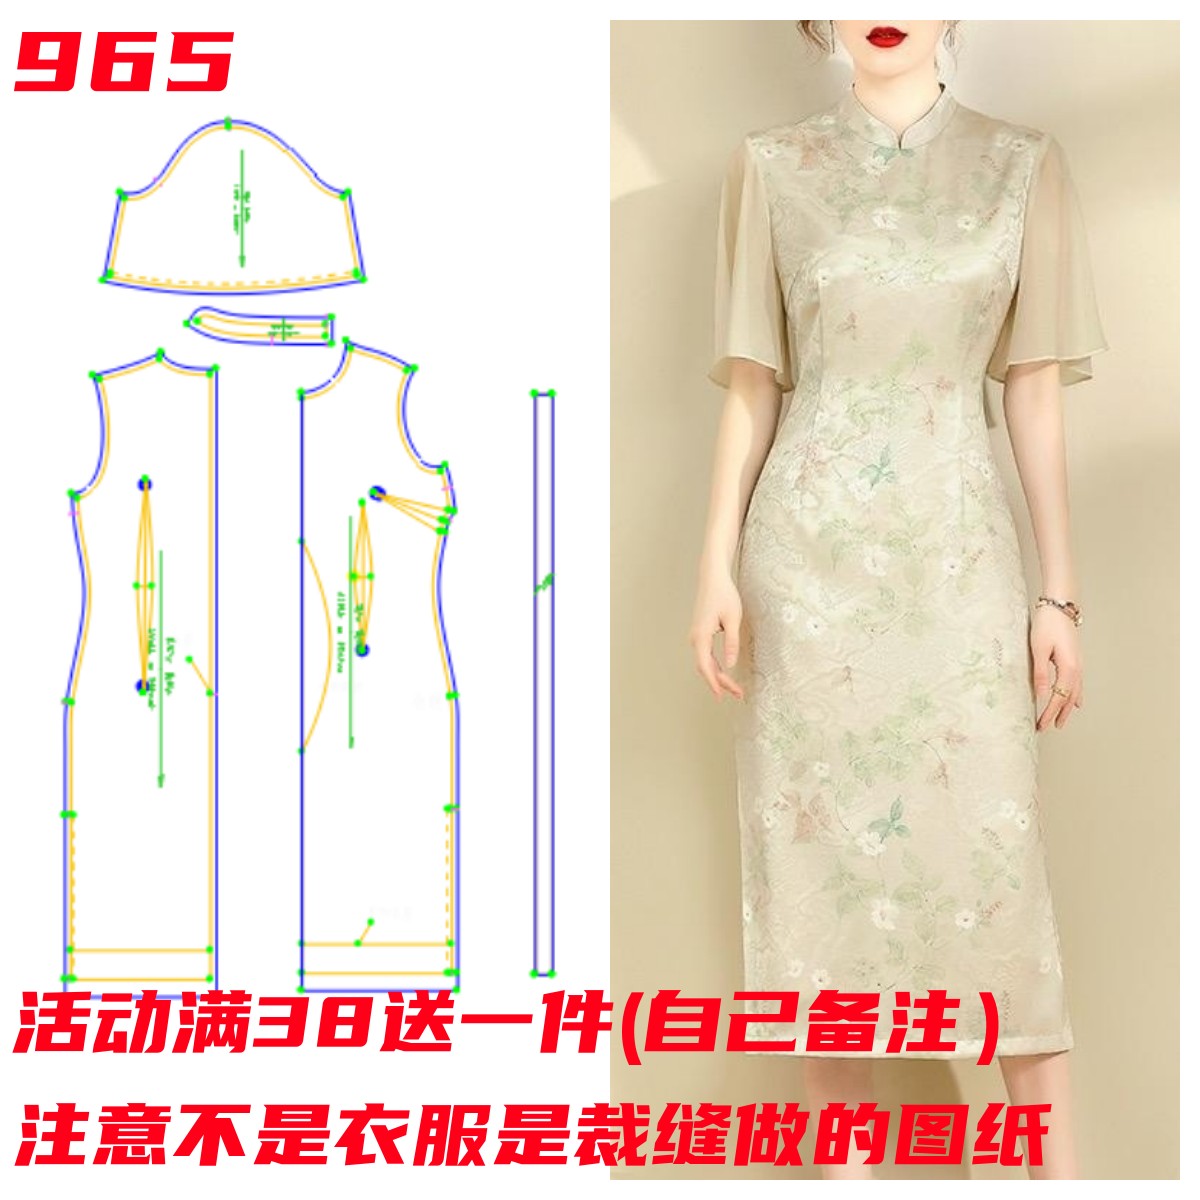 衣依纸样965款改良中国风旗袍裙子喇叭袖修身连衣裙裁剪图样板图